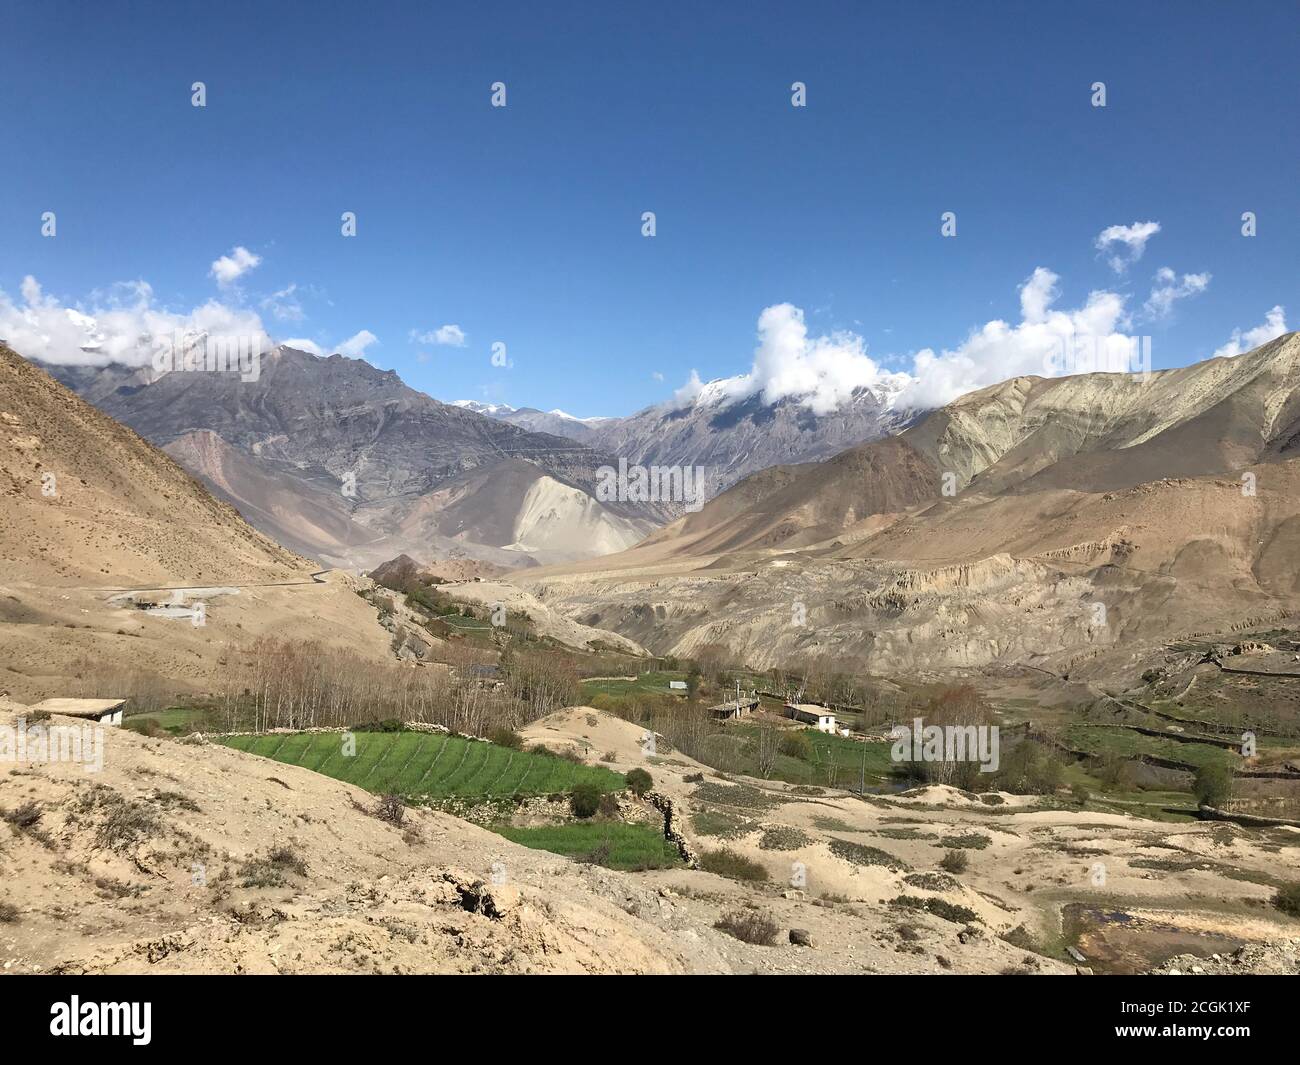 Vue incroyable sur le village Kagbeni, la vallée de Kali Gandaki, Mustang, Népal. Magnifique paysage de montagne. Majestueux chaîne de montagnes de l'Himalaya. Belle nature tibétaine Banque D'Images